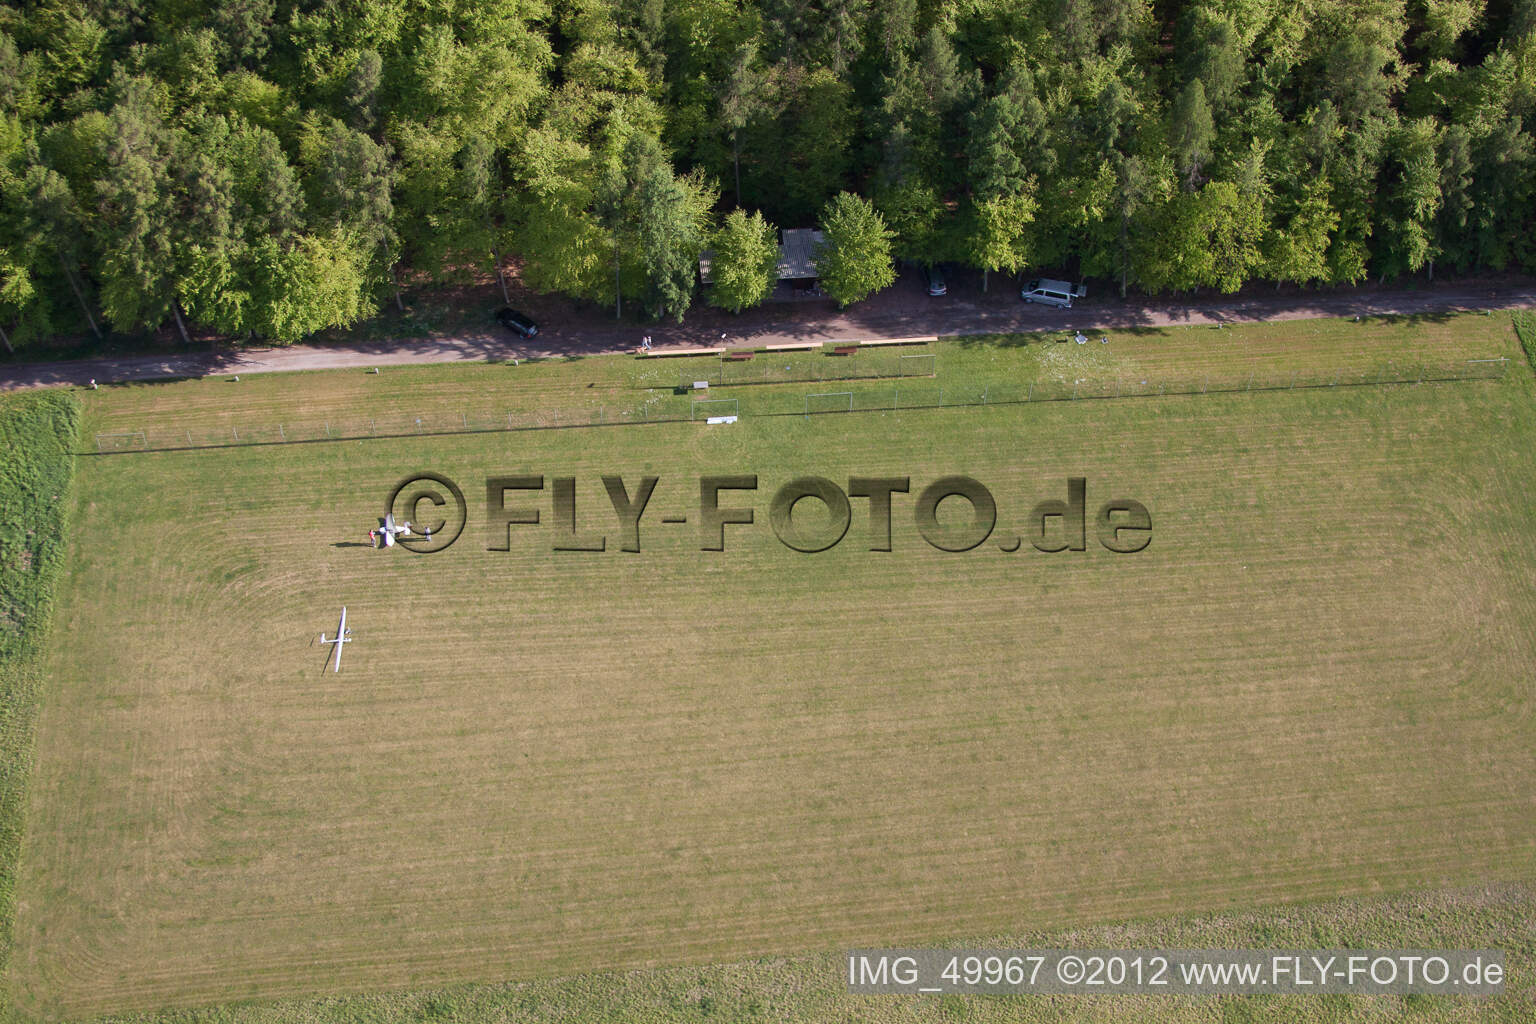 Vue aérienne de Aérodrome modèle MSC Rülzheim vu du nord à Rülzheim dans le département Rhénanie-Palatinat, Allemagne